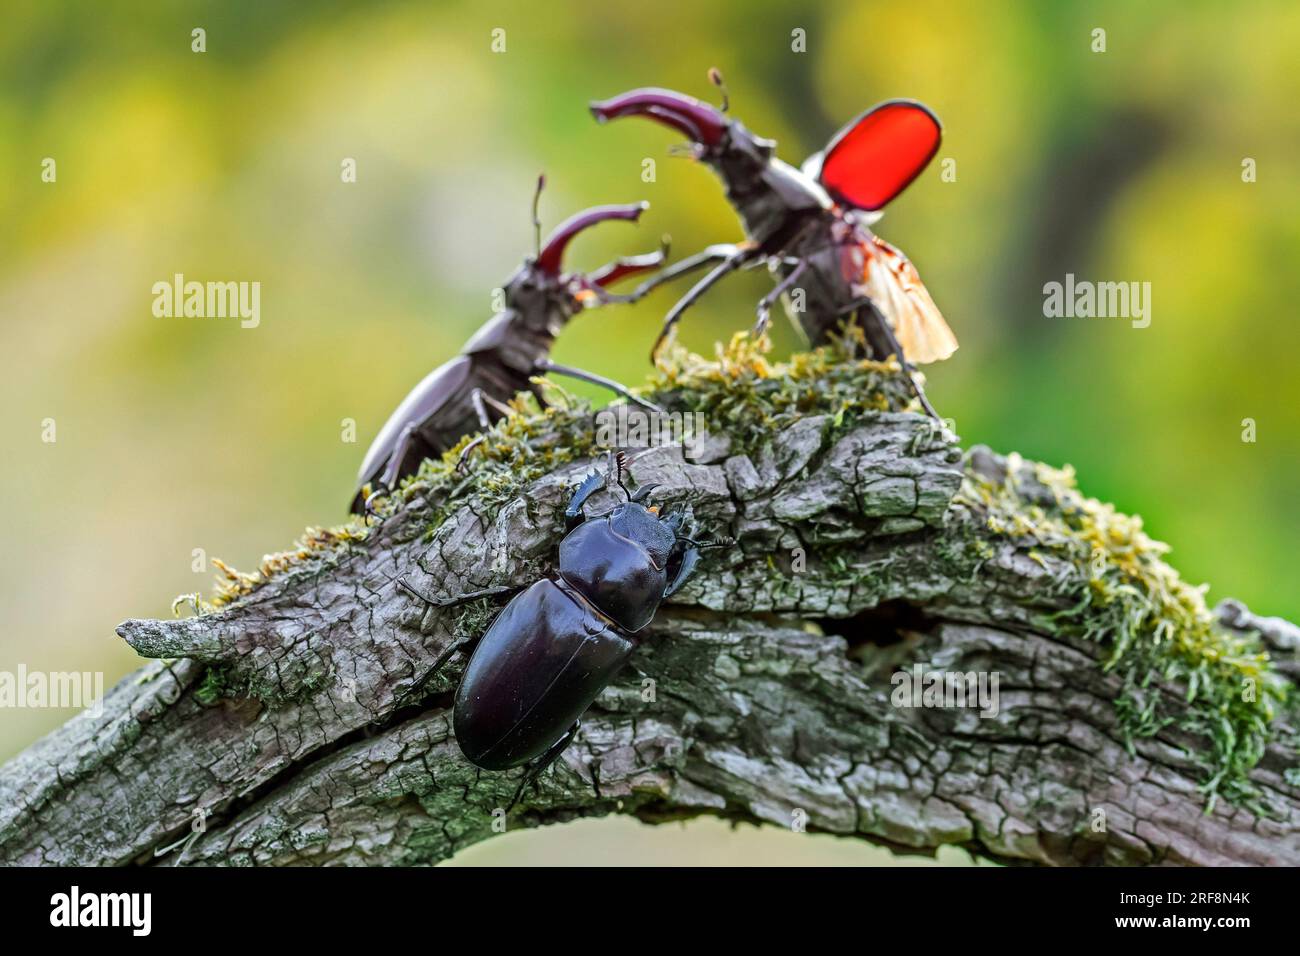 Coléoptères européens (Lucanus cervus) deux mâles avec de grandes mandibules / mâchoires se battant sur femelle sur le bois pourri de souche d'arbre dans la forêt en été Banque D'Images